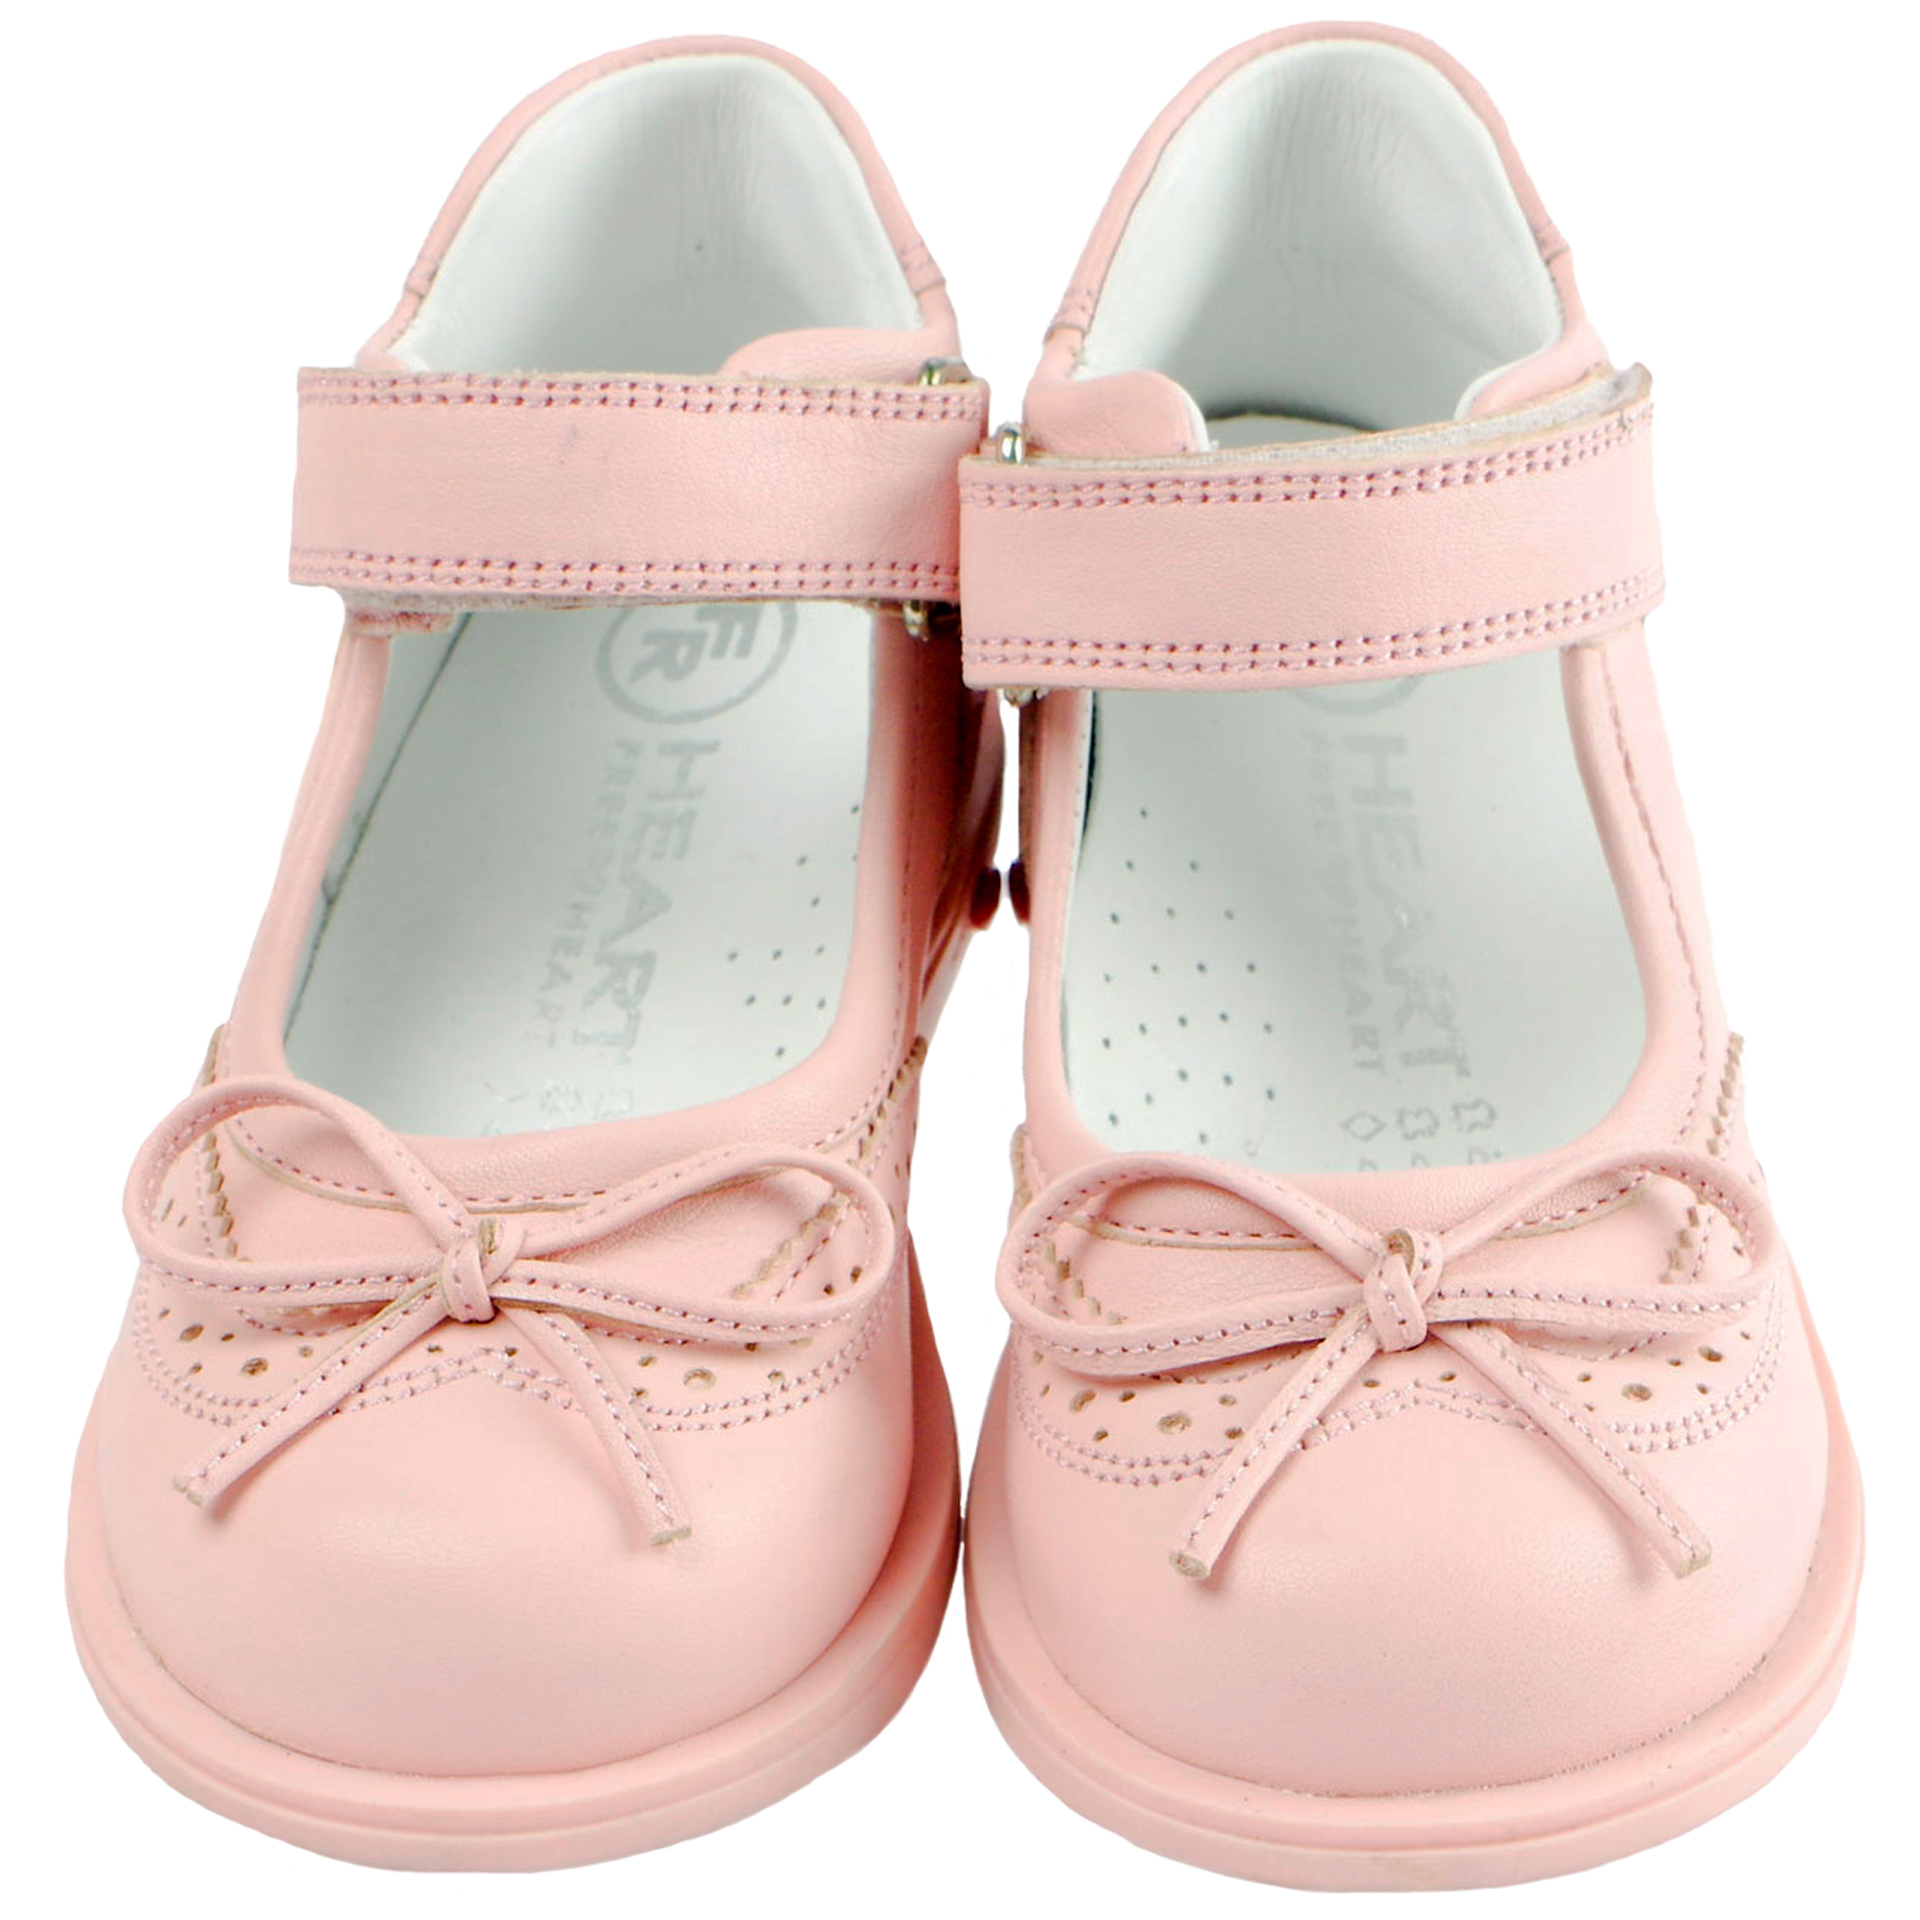 Туфли детские (1415) материал Натуральная кожа, цвет Розовый  для девочки 21-25 размеры – Sole Kids. Фото 3